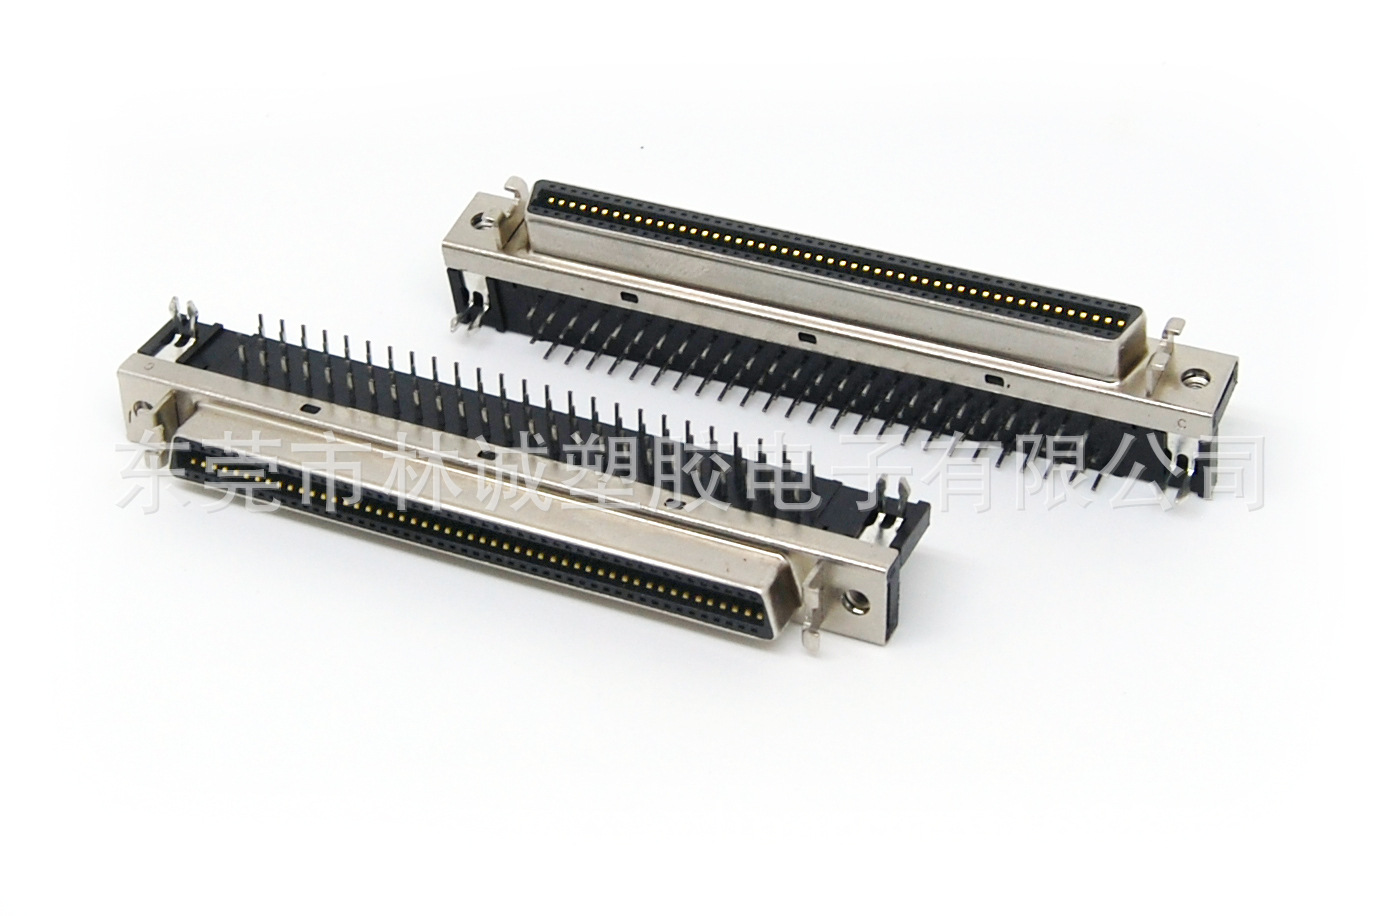 SCSI 100P弯插母座,HPCN 100P槽式连接器,MCR,MDR 100P母座连接器|ru